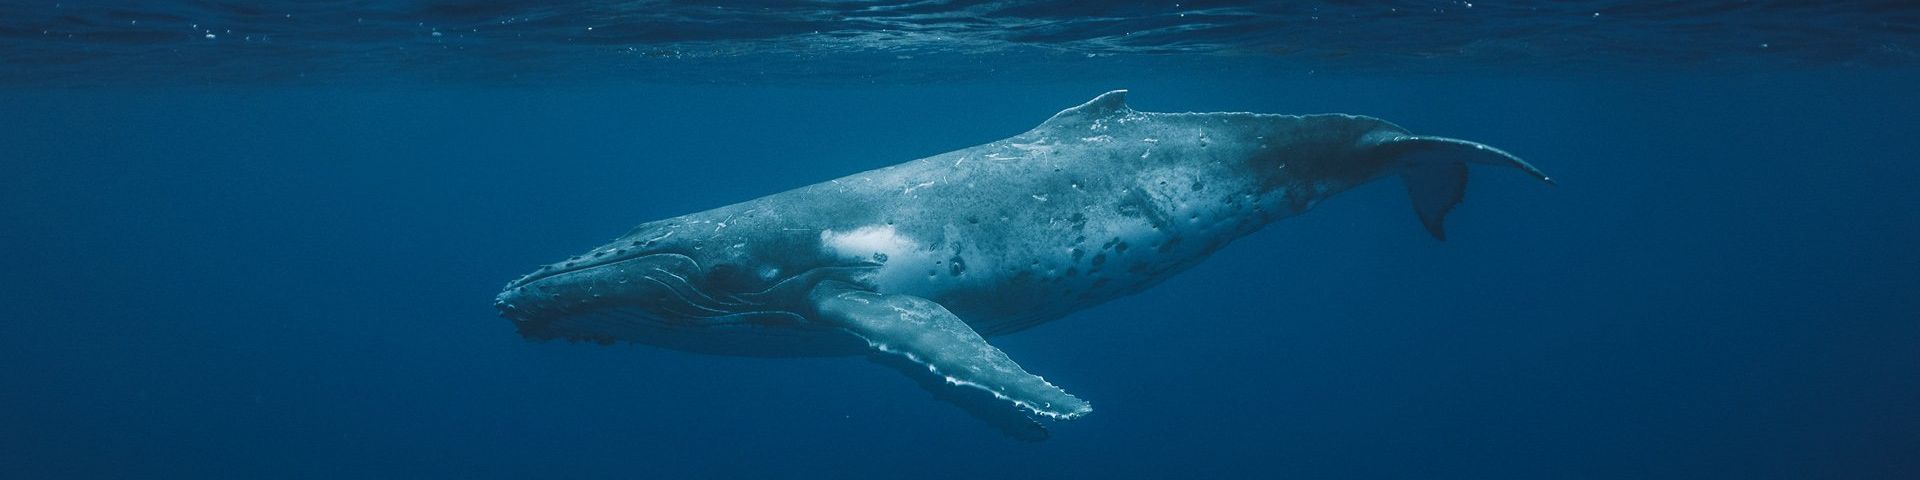 A humpback whale, swimming through the dark blue ocean.